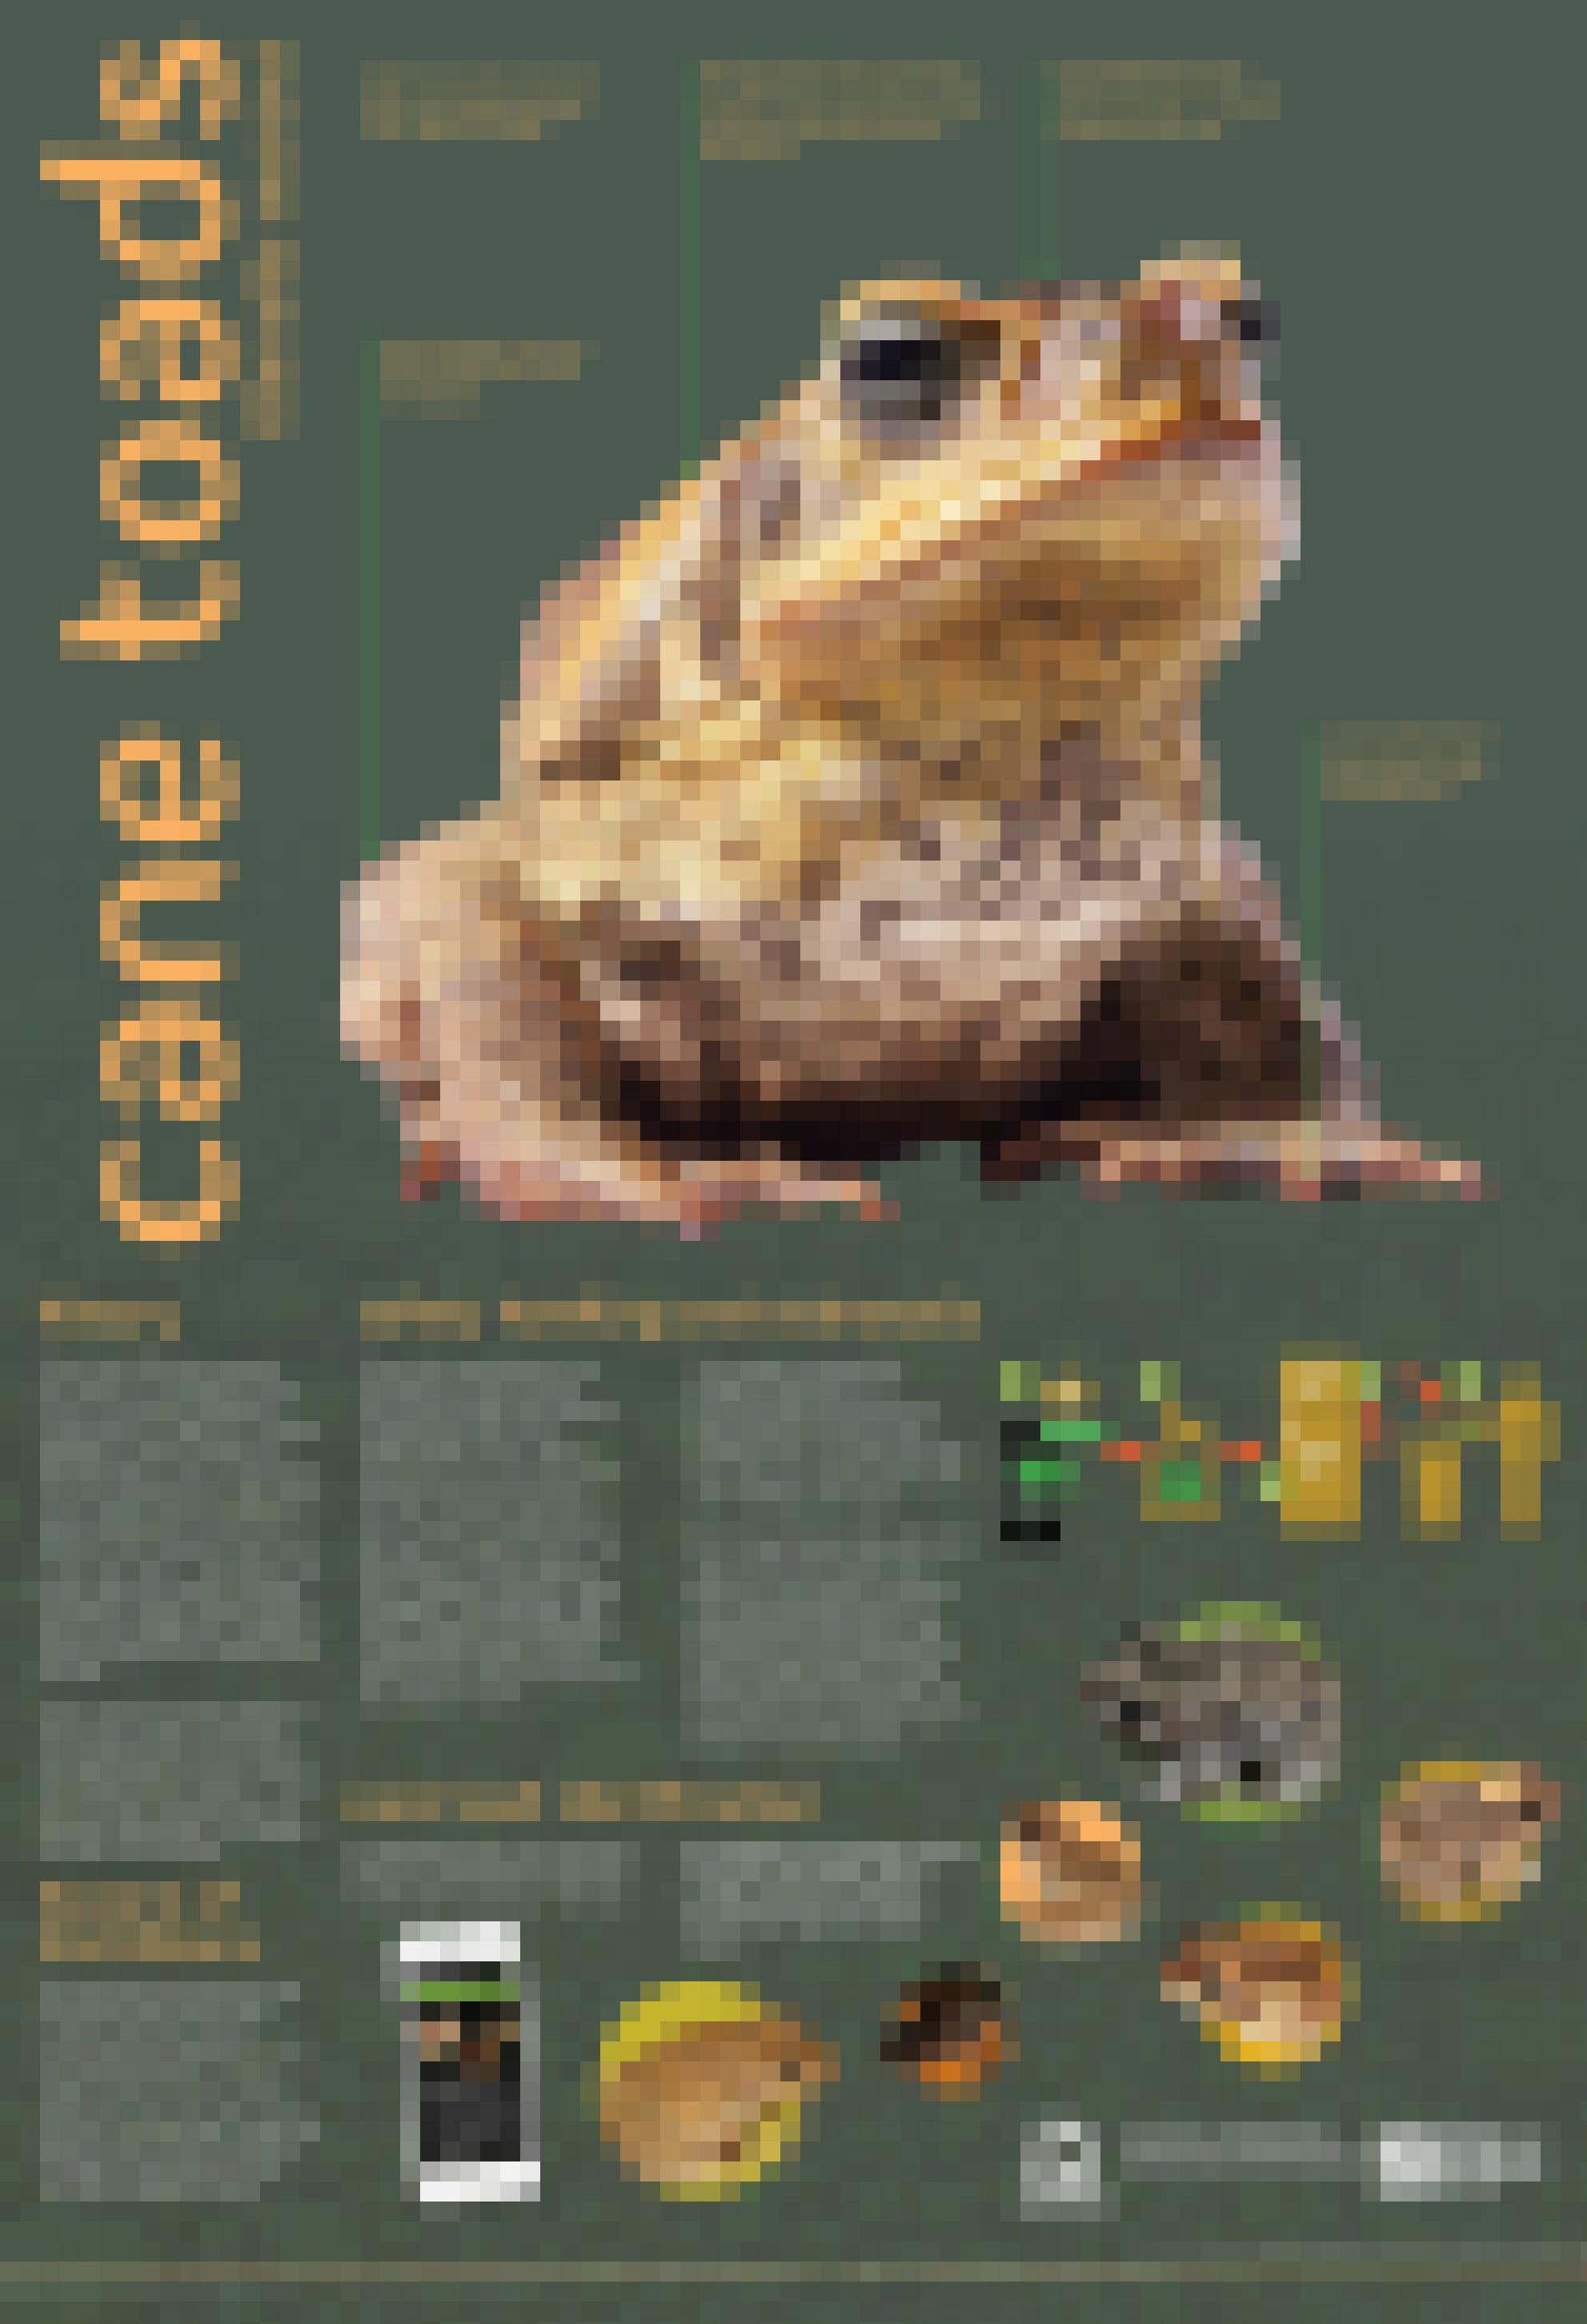 Ein Poster der australischen Cane Toad Coalition erklärt, wie Aga-Kröten zu identifizieren, handhaben und im Gefrierschrank zu töten sind.